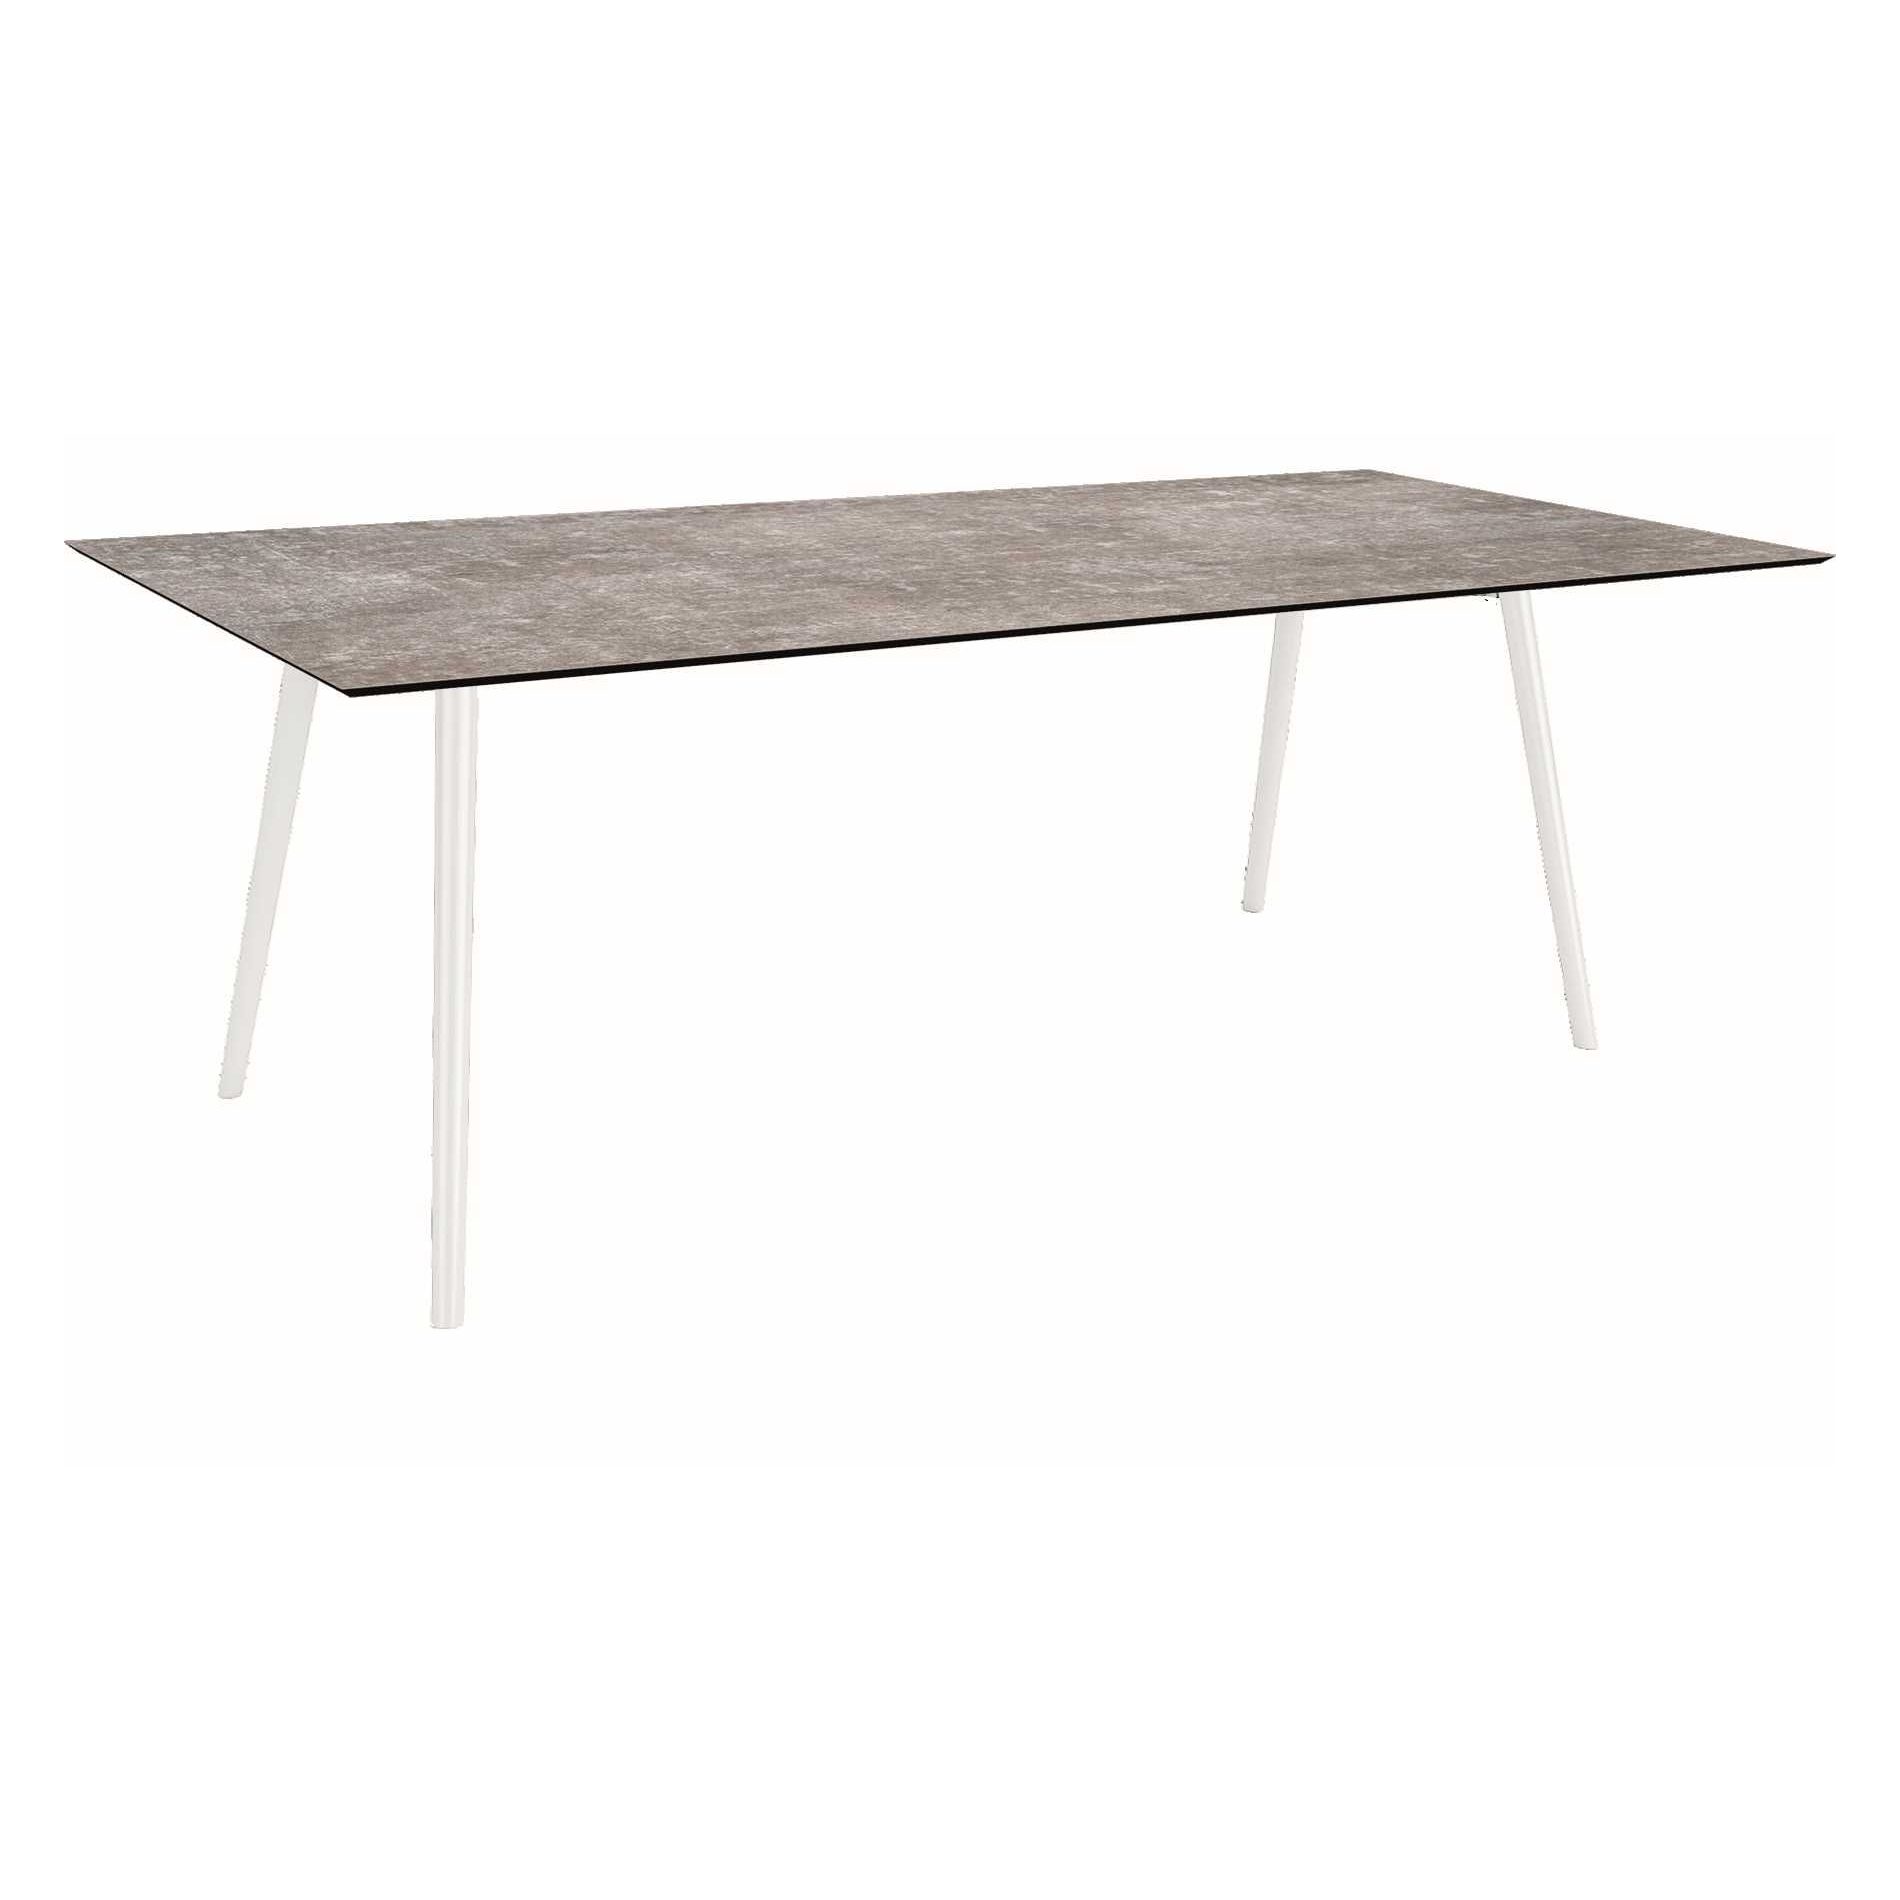 Stern Tisch "Interno", Größe 220x100cm, Alu weiß, Rundrohr, Tischplatte HPL Metallic Grau